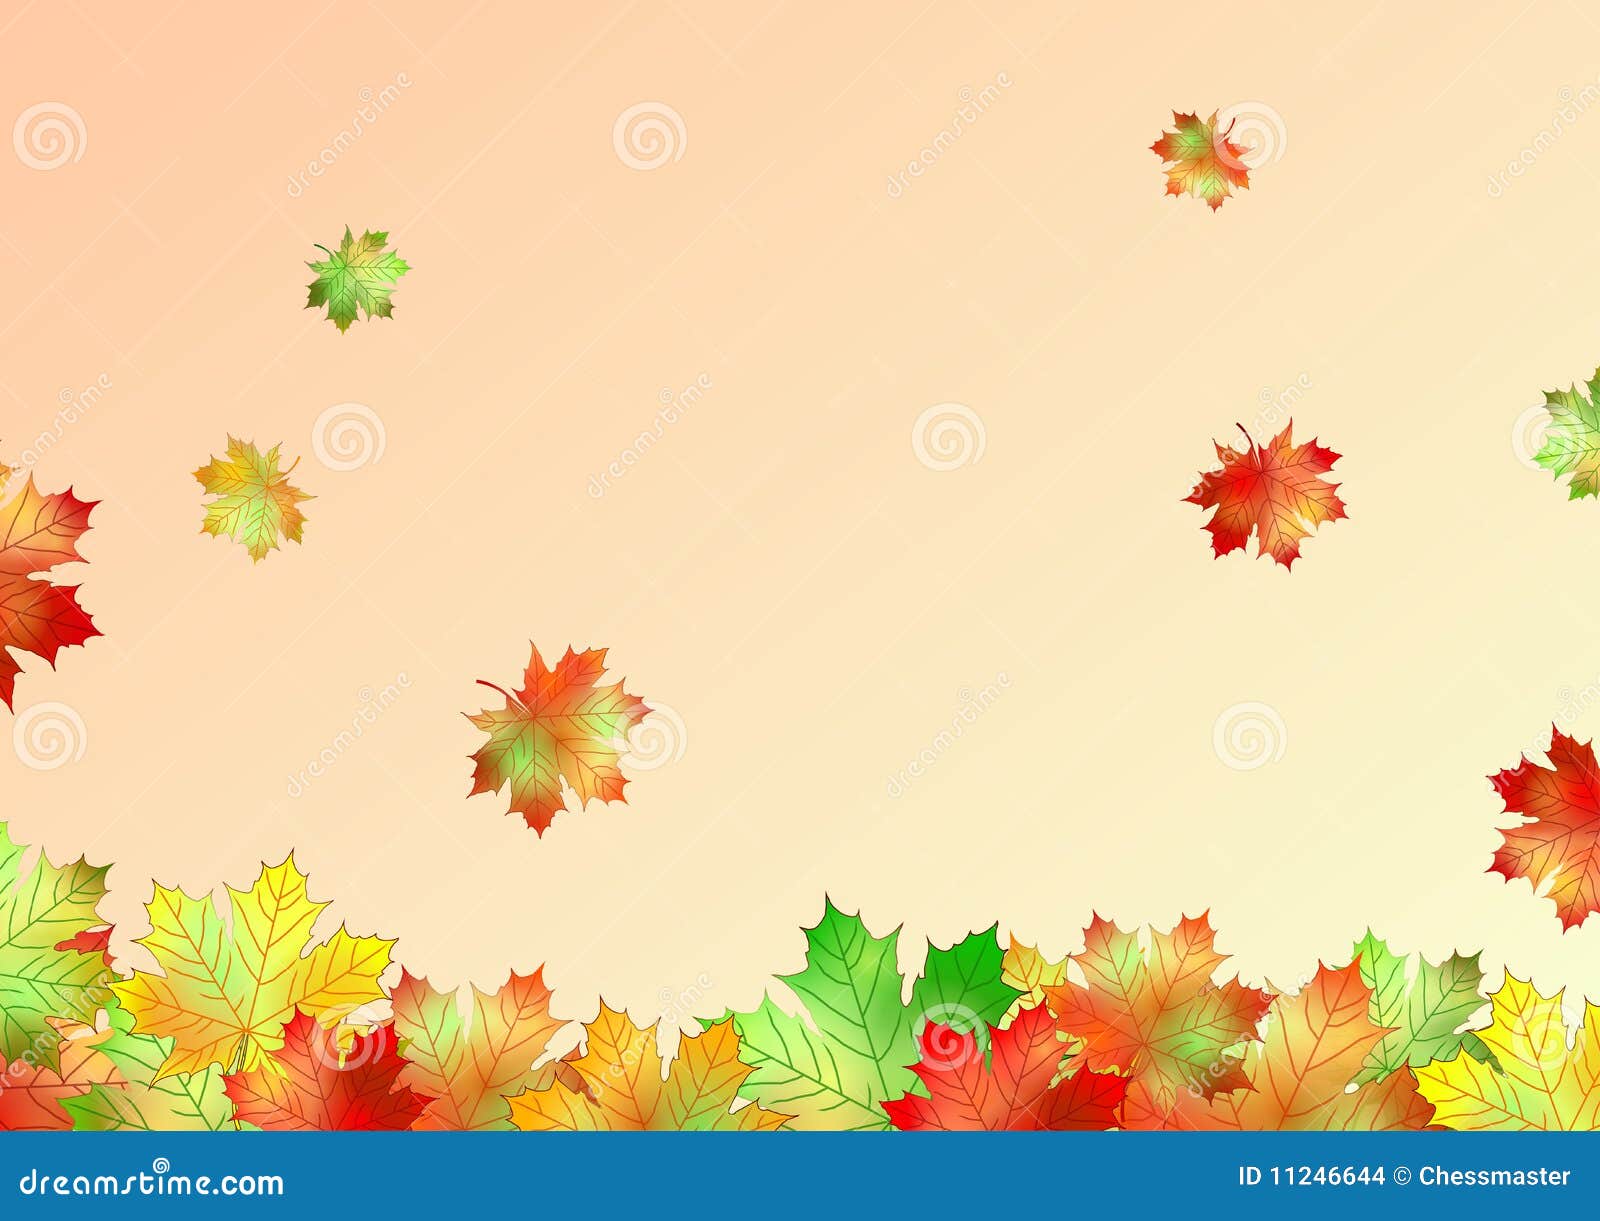 autumn leaves illustrator cs4